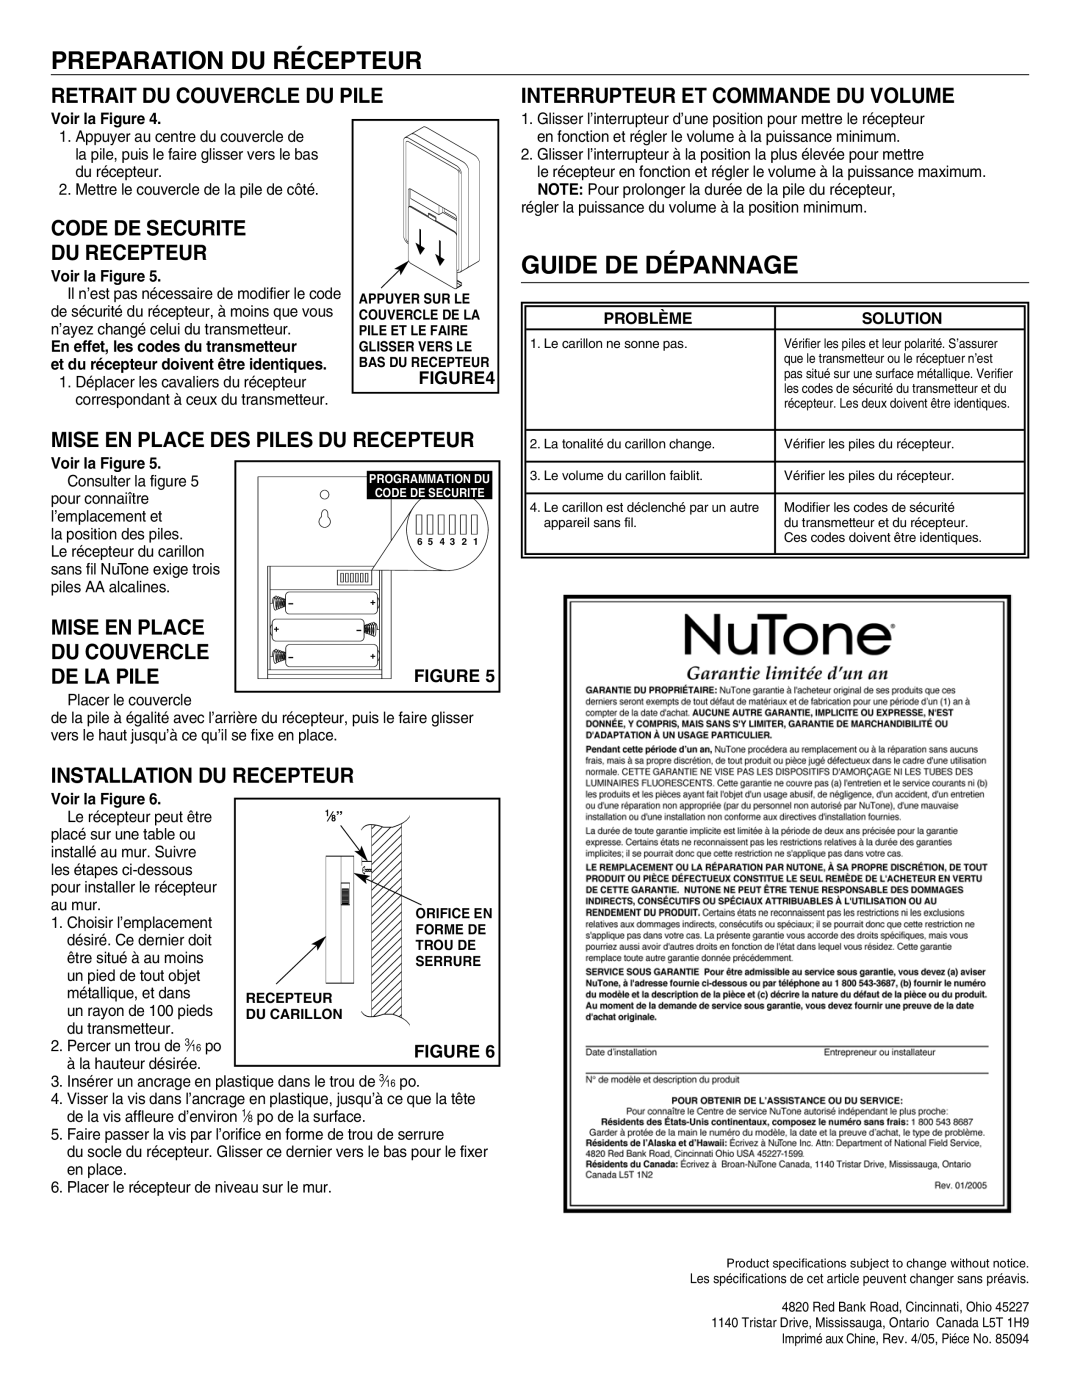 NuTone LA-205WH Preparation Du Récepteur, Guide De Dépannage, Retrait Du Couvercle Du Pile, Code De Securite Du Recepteur 